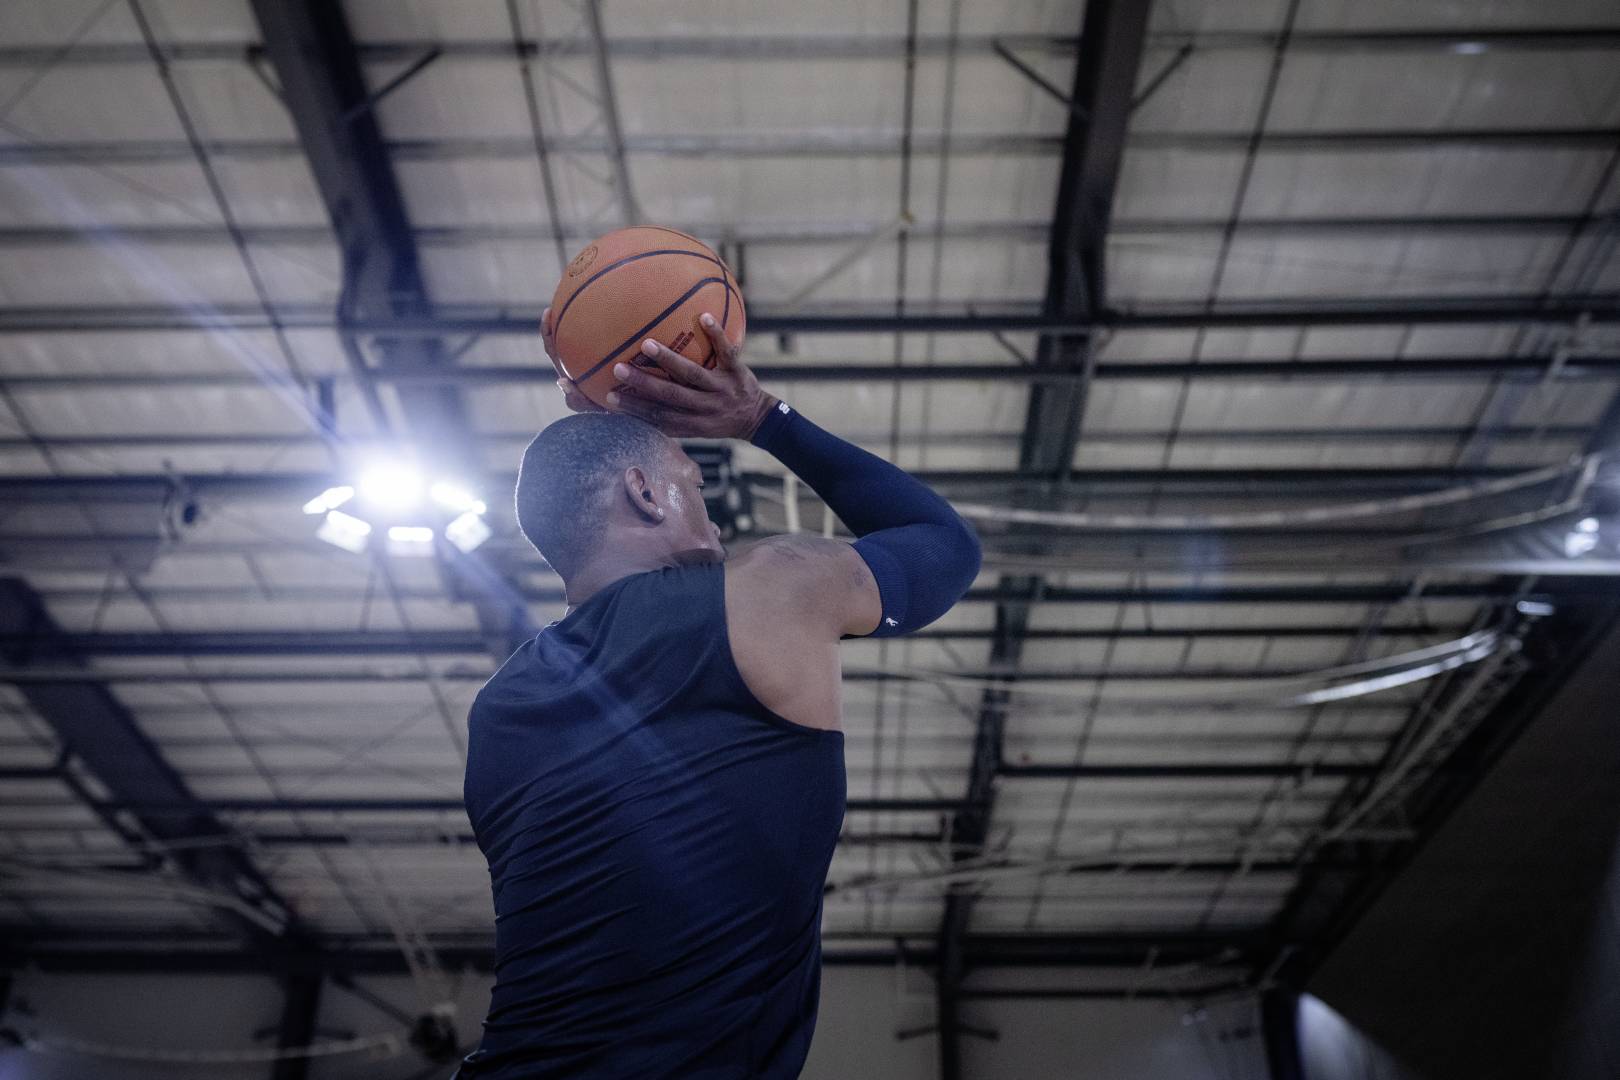 Basketbalspelers met een blauwe wapenleeve in een sporthal beginnen met hun handen boven het hoofd naar de worp